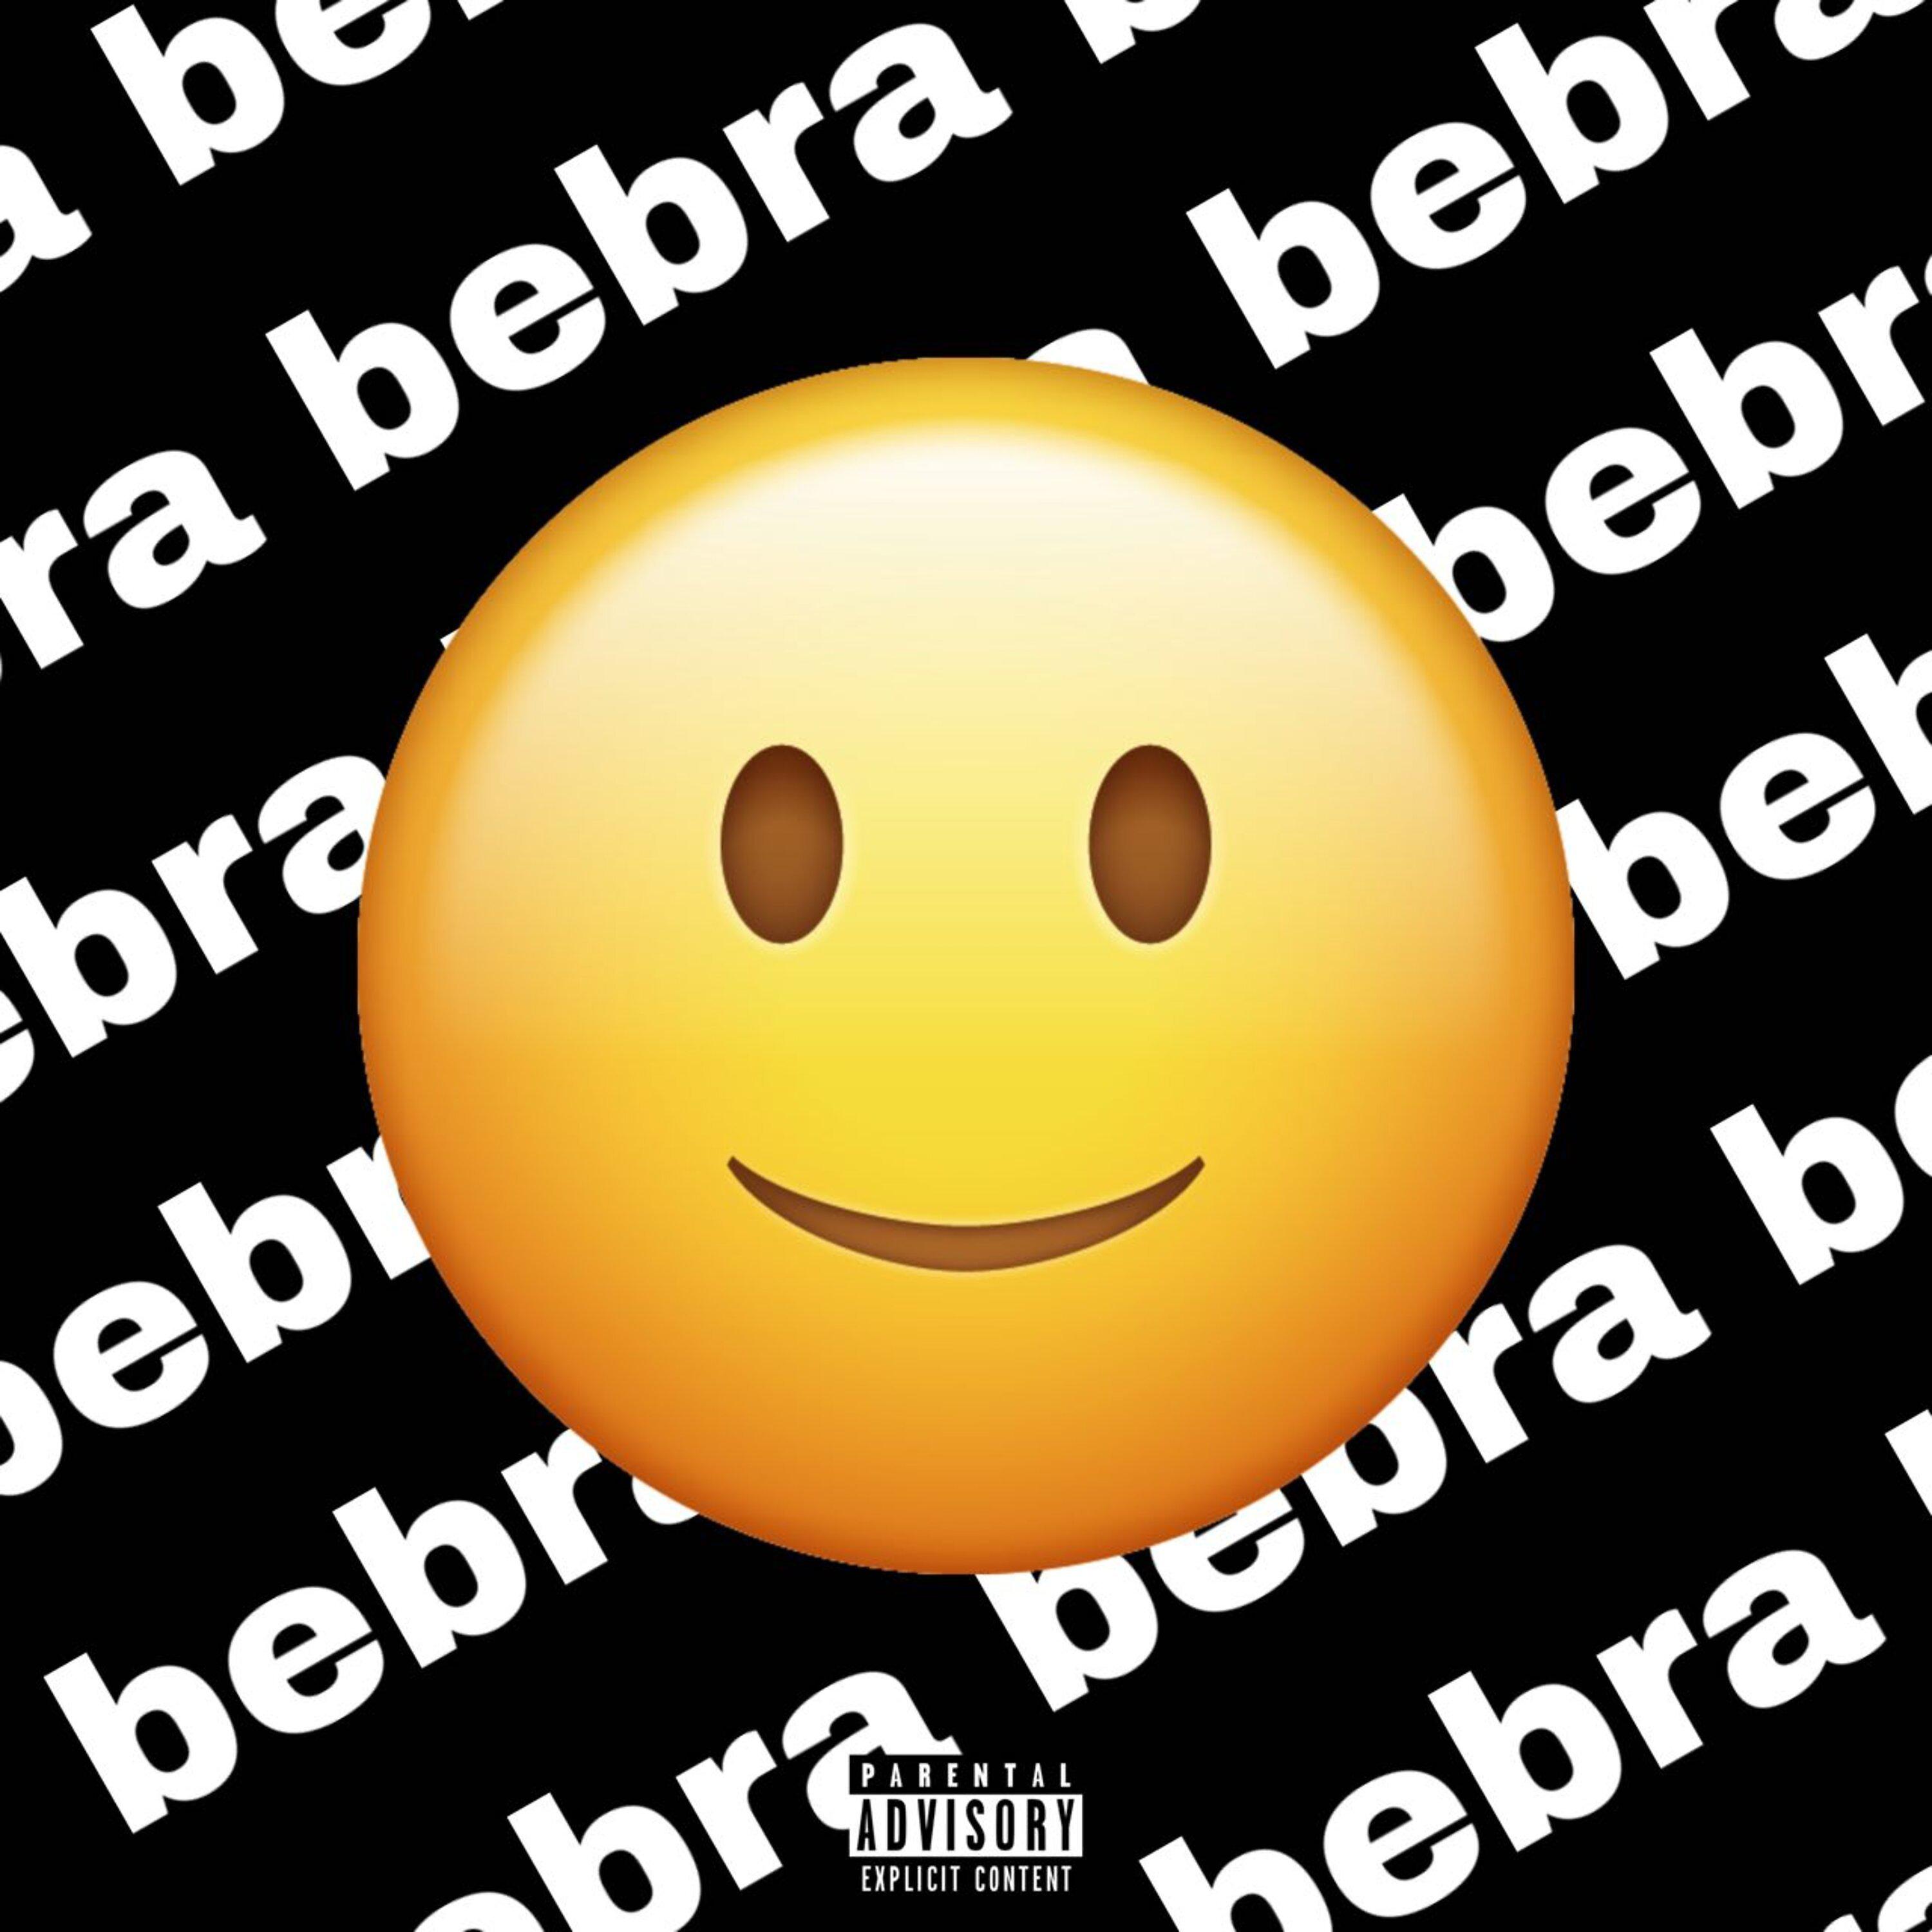 Постер альбома Bebra